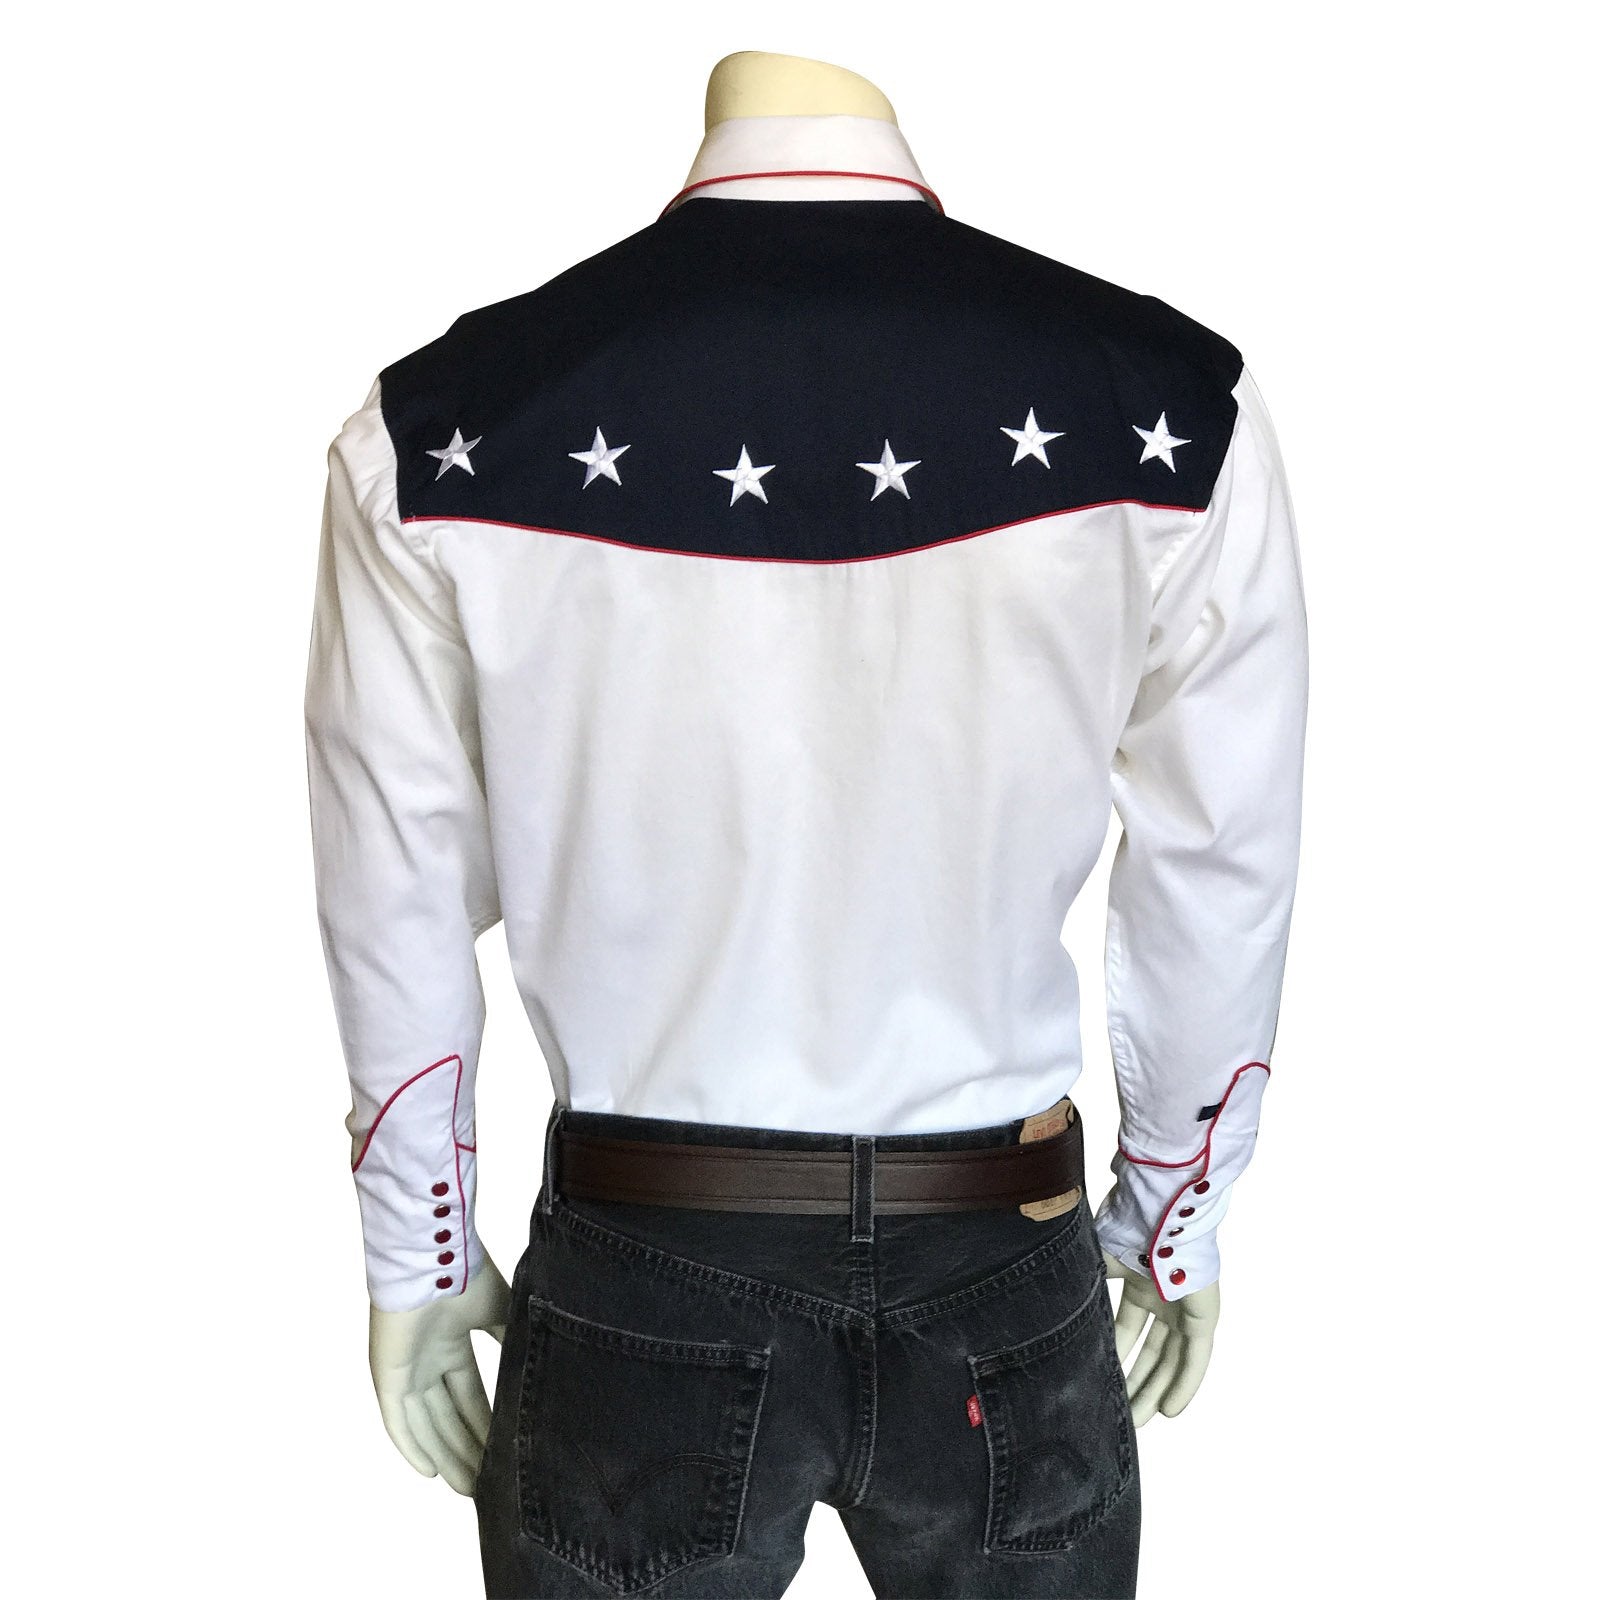 Rockmount Ranch Wear Men's Vintage Western Flag Shirt Front on Mannequin